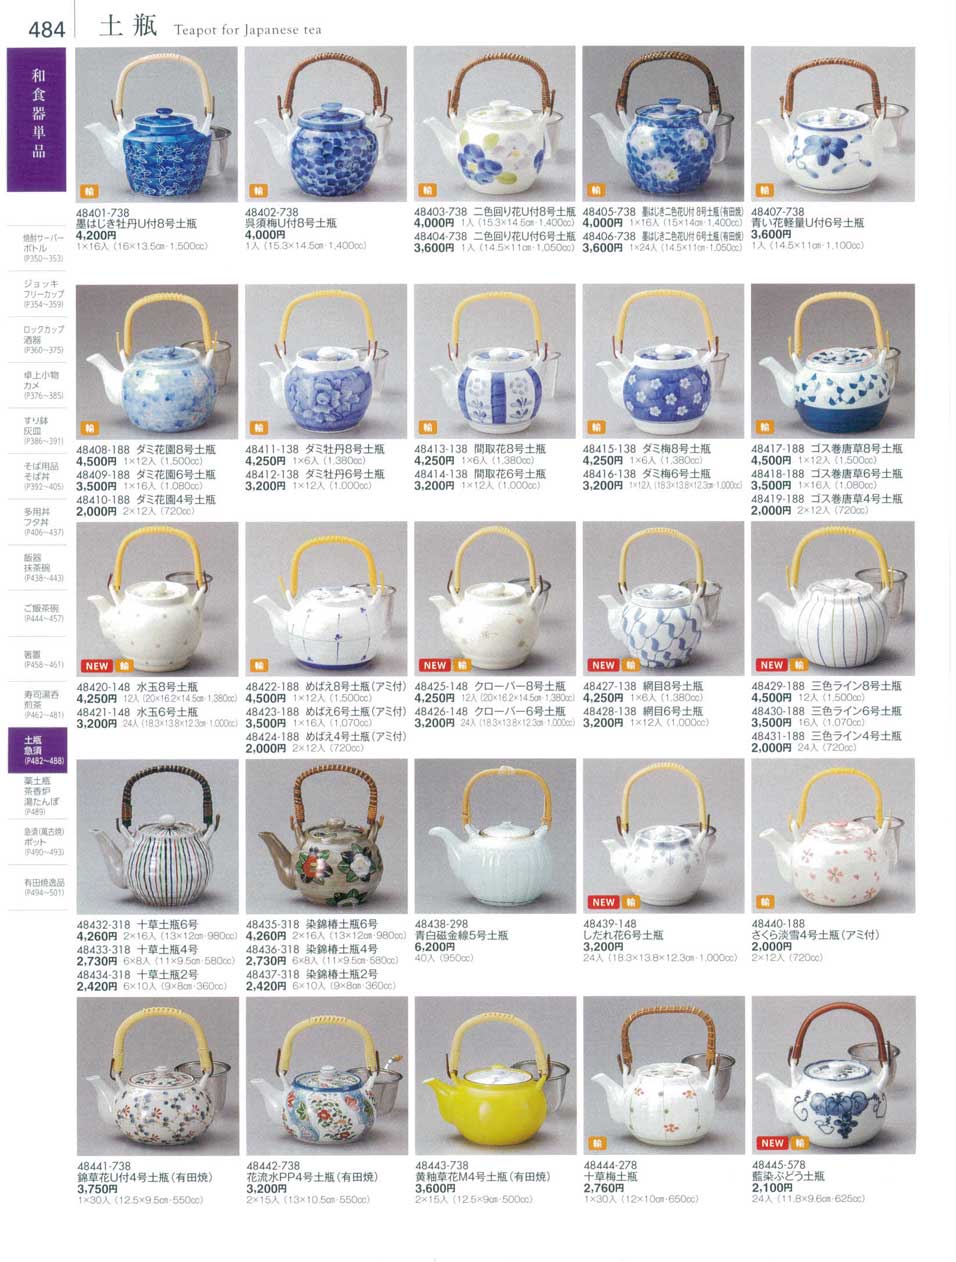 食器 土瓶Teapot for Japanese tea 陶雅１８－484ページ